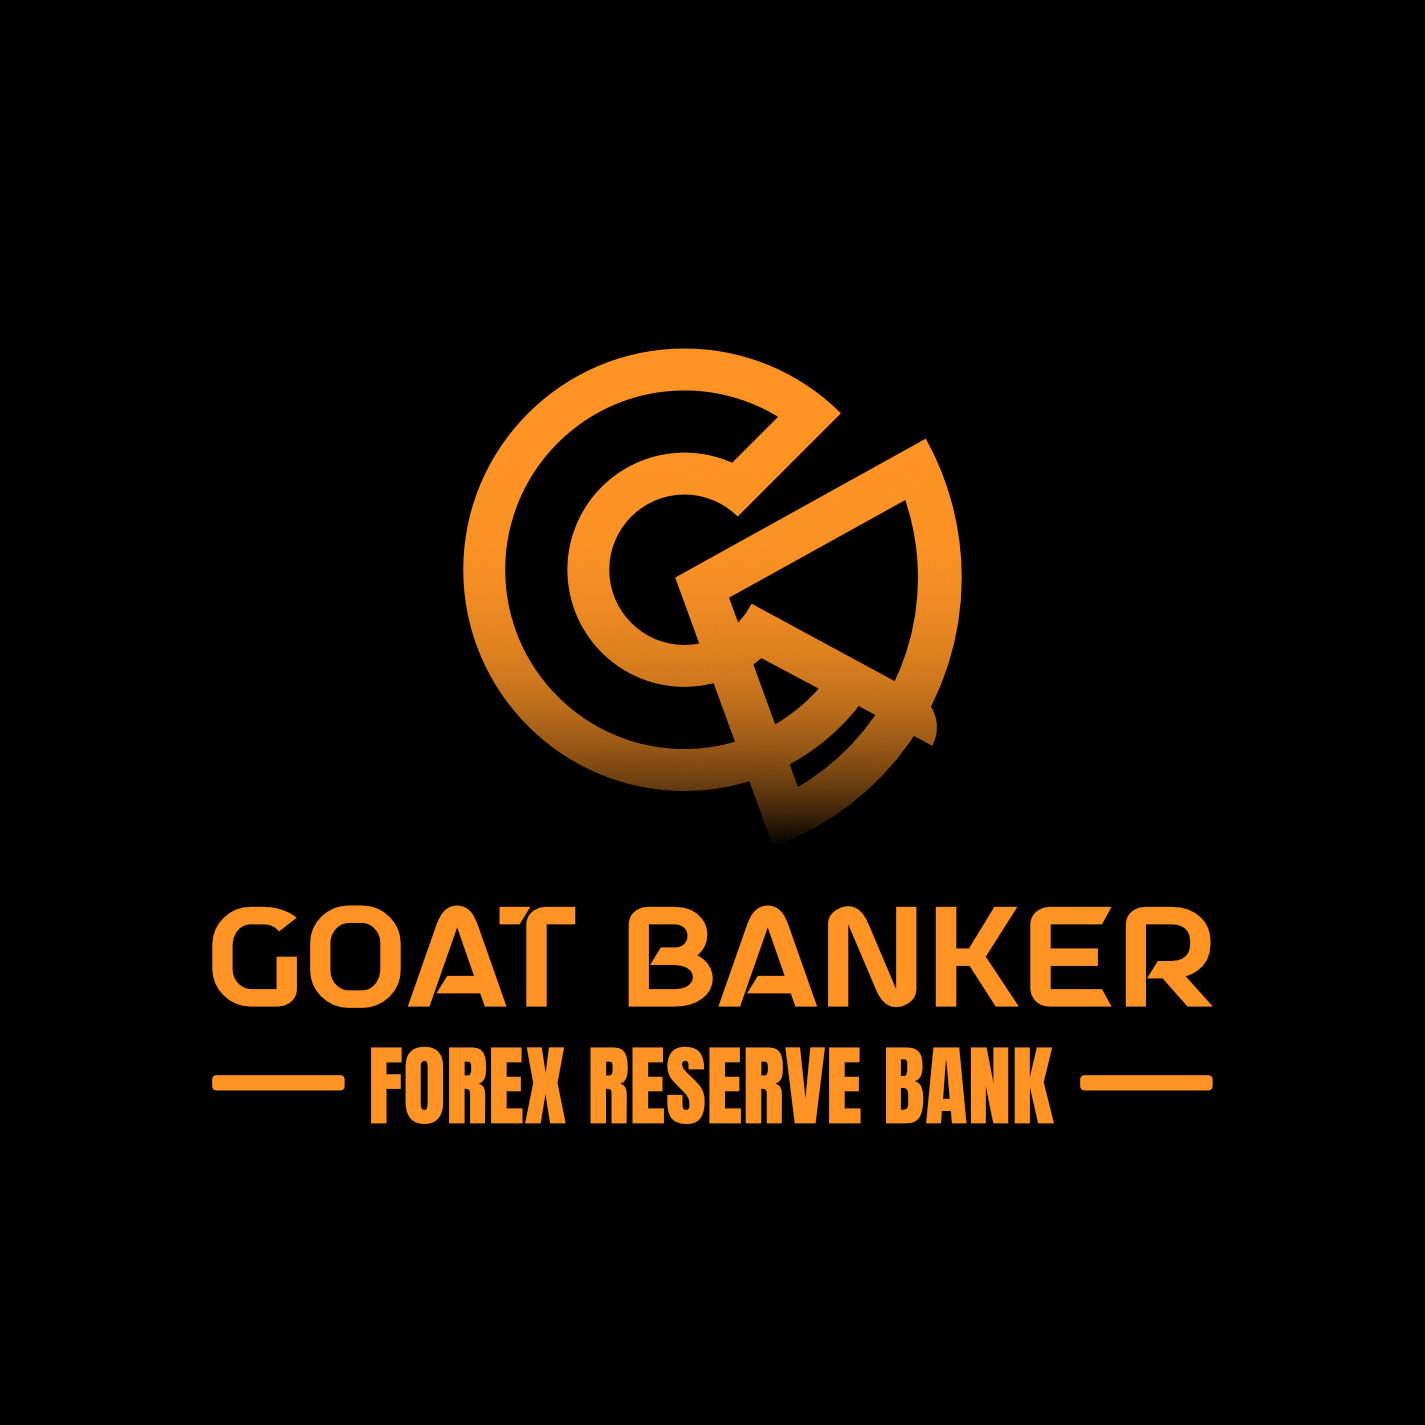 Goat Banker